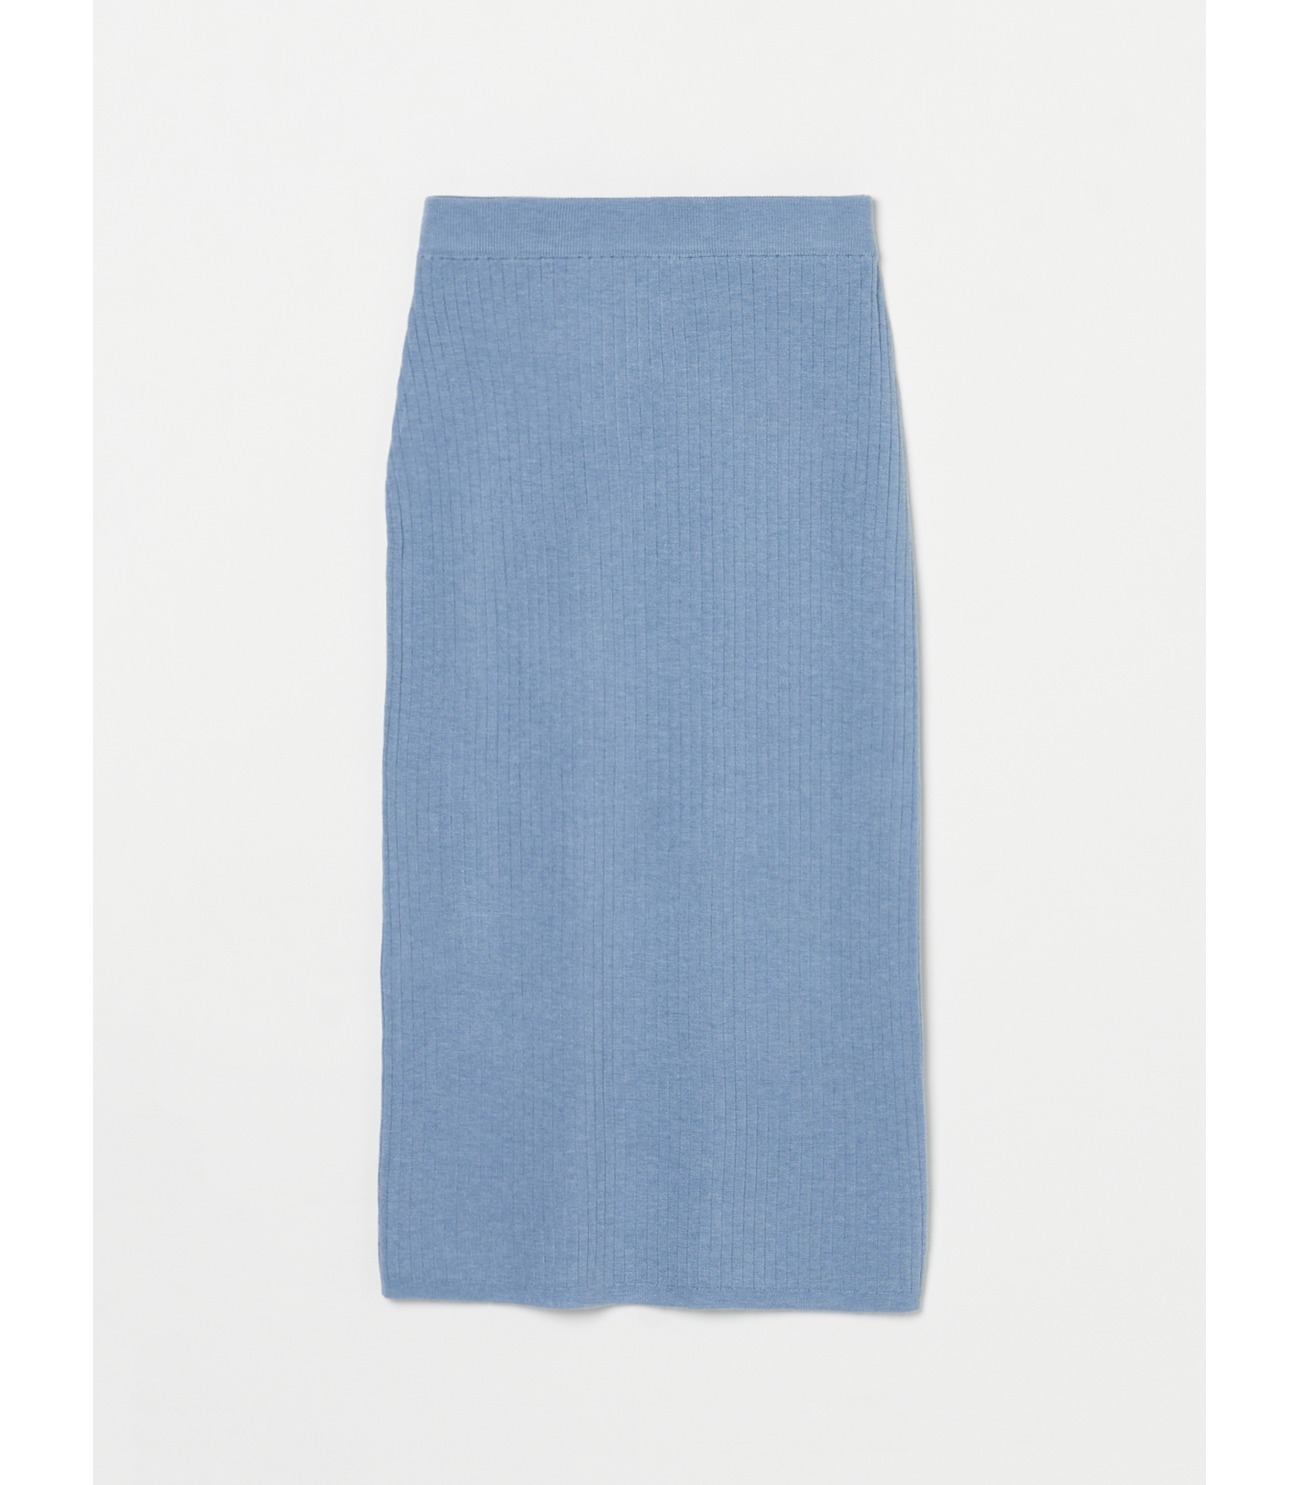 Moist pencil skirt 詳細画像 lt blue 1